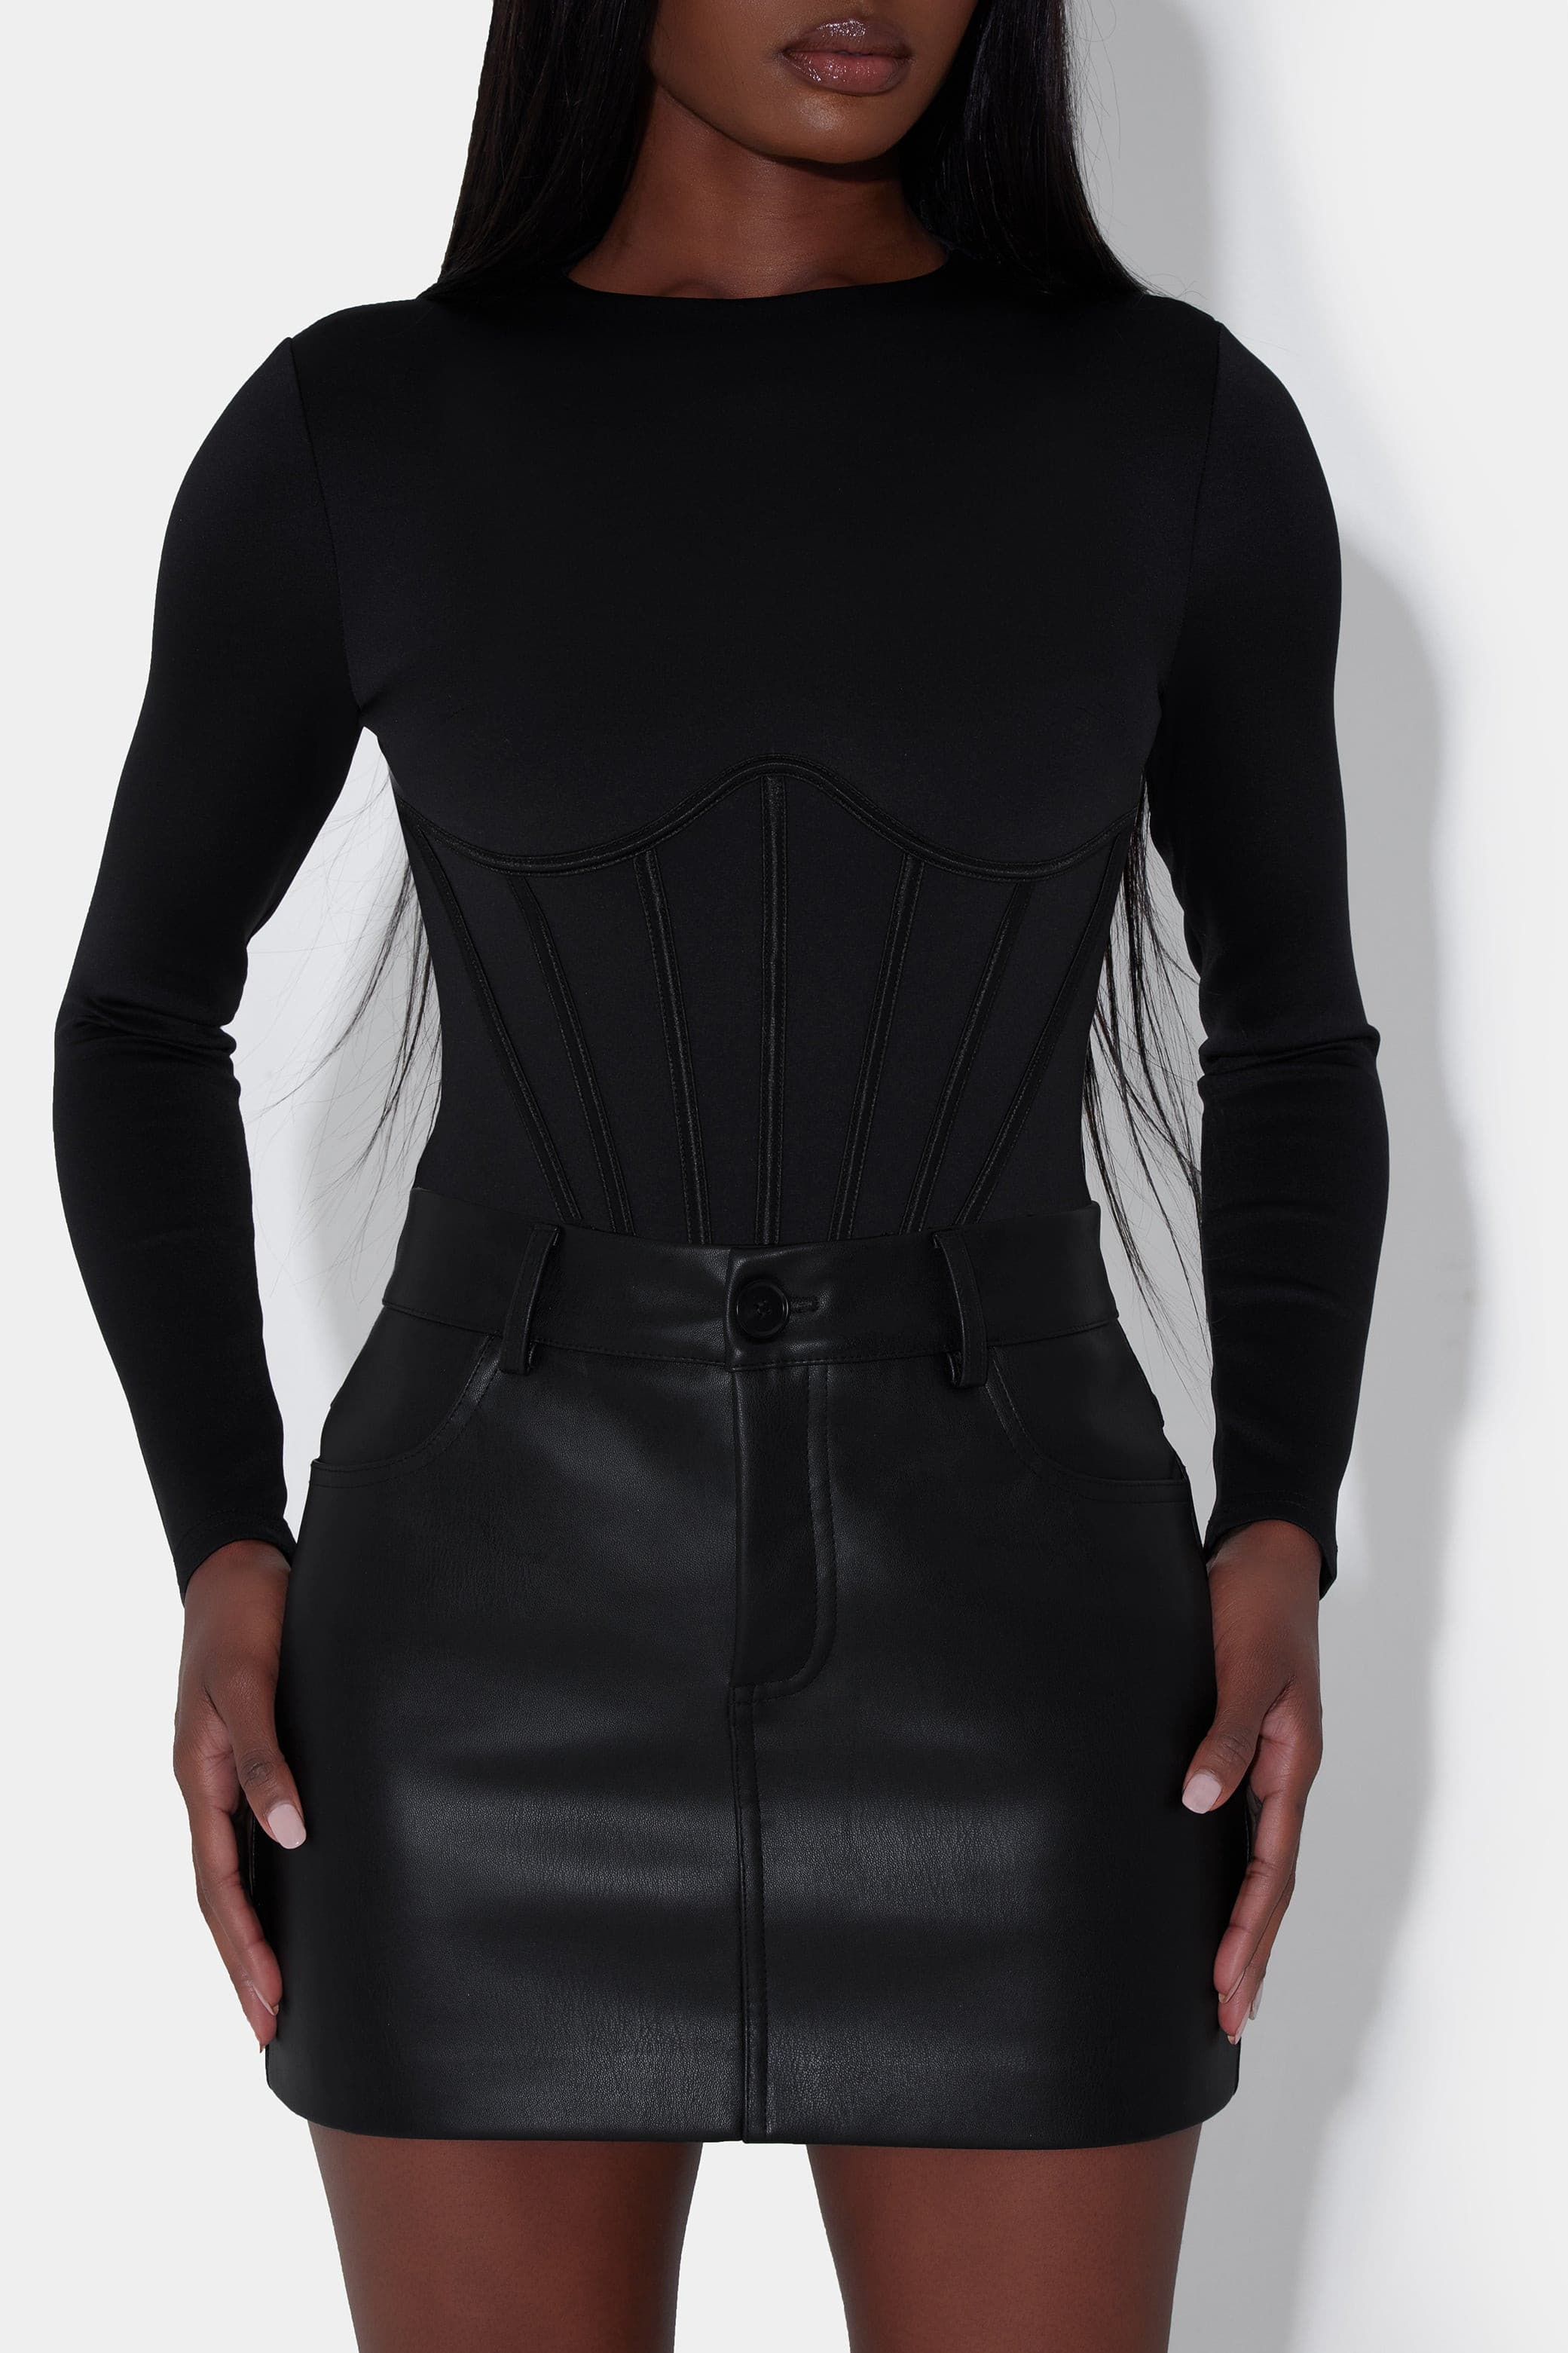 Corset Mesh Black Bodysuit – Offbeat Boutique